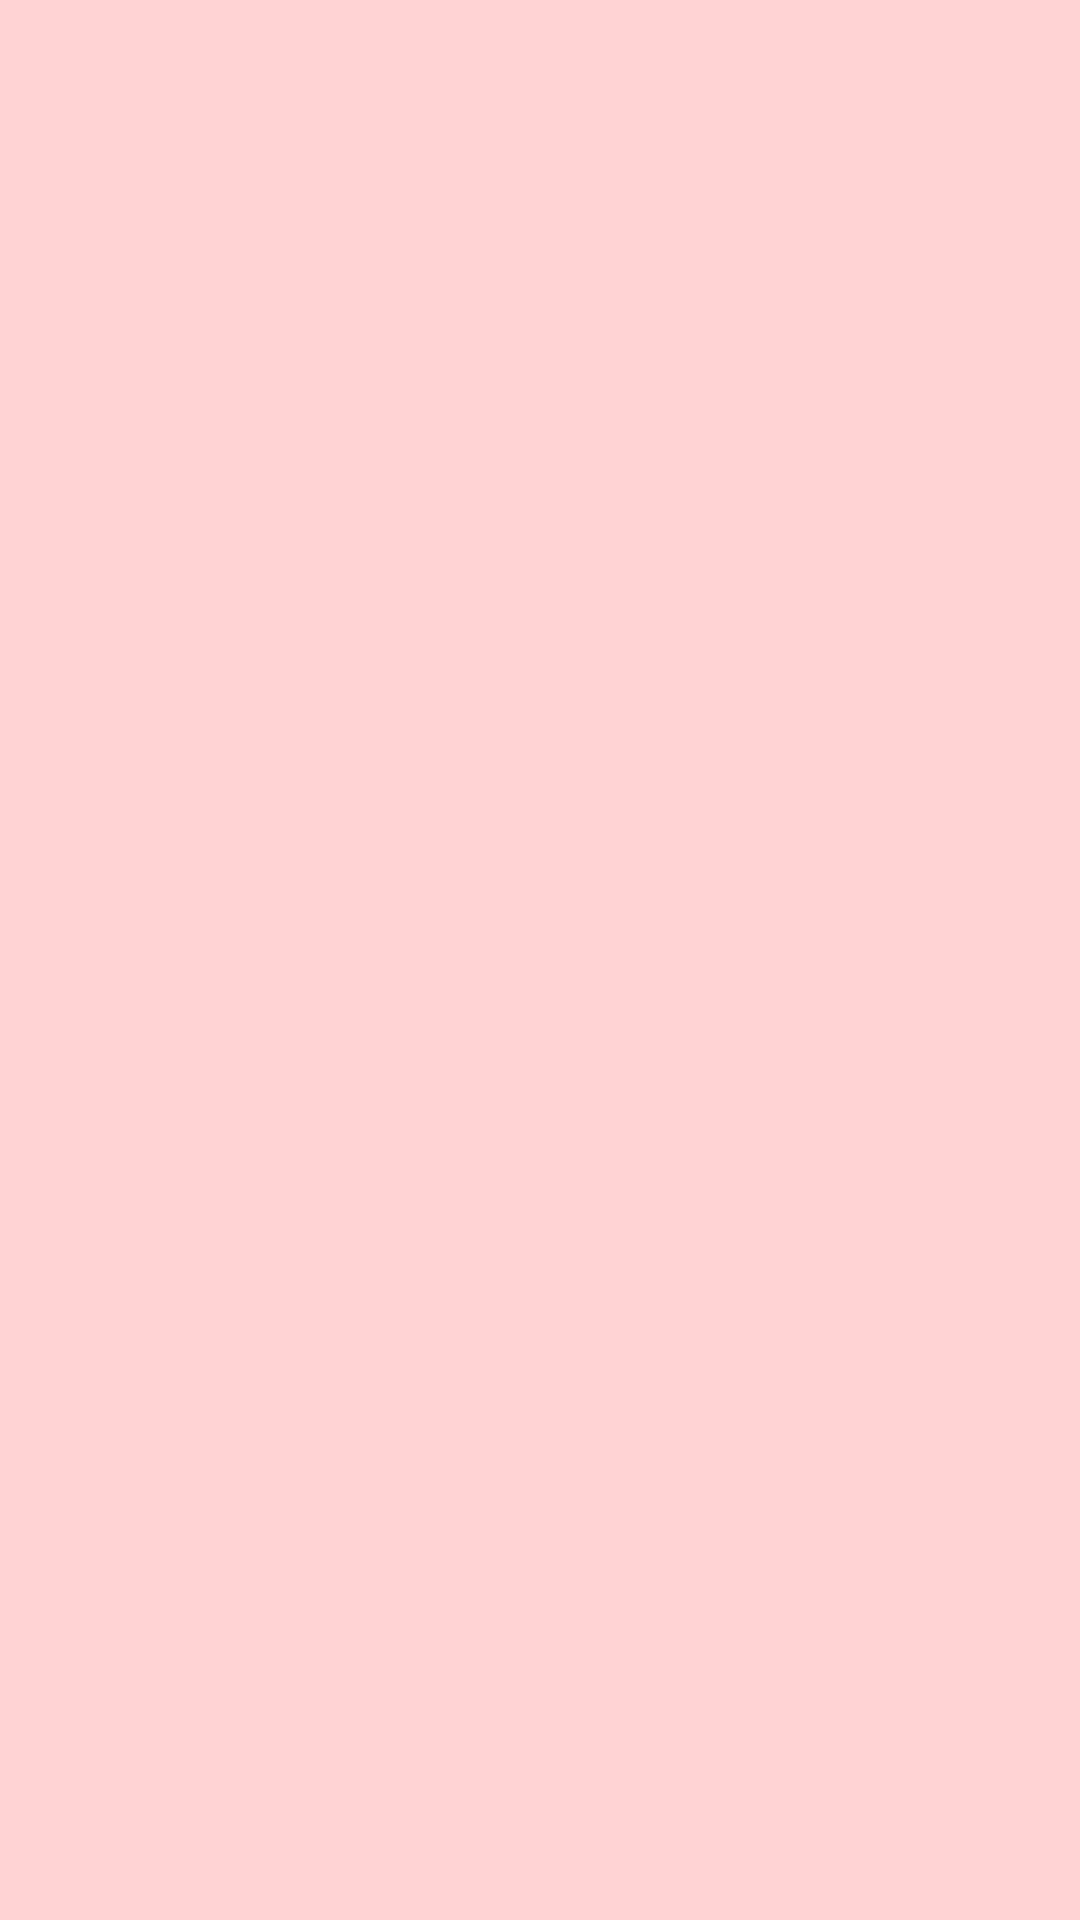 Pink Plain Hd Iphone Wallpaper Wallpaper